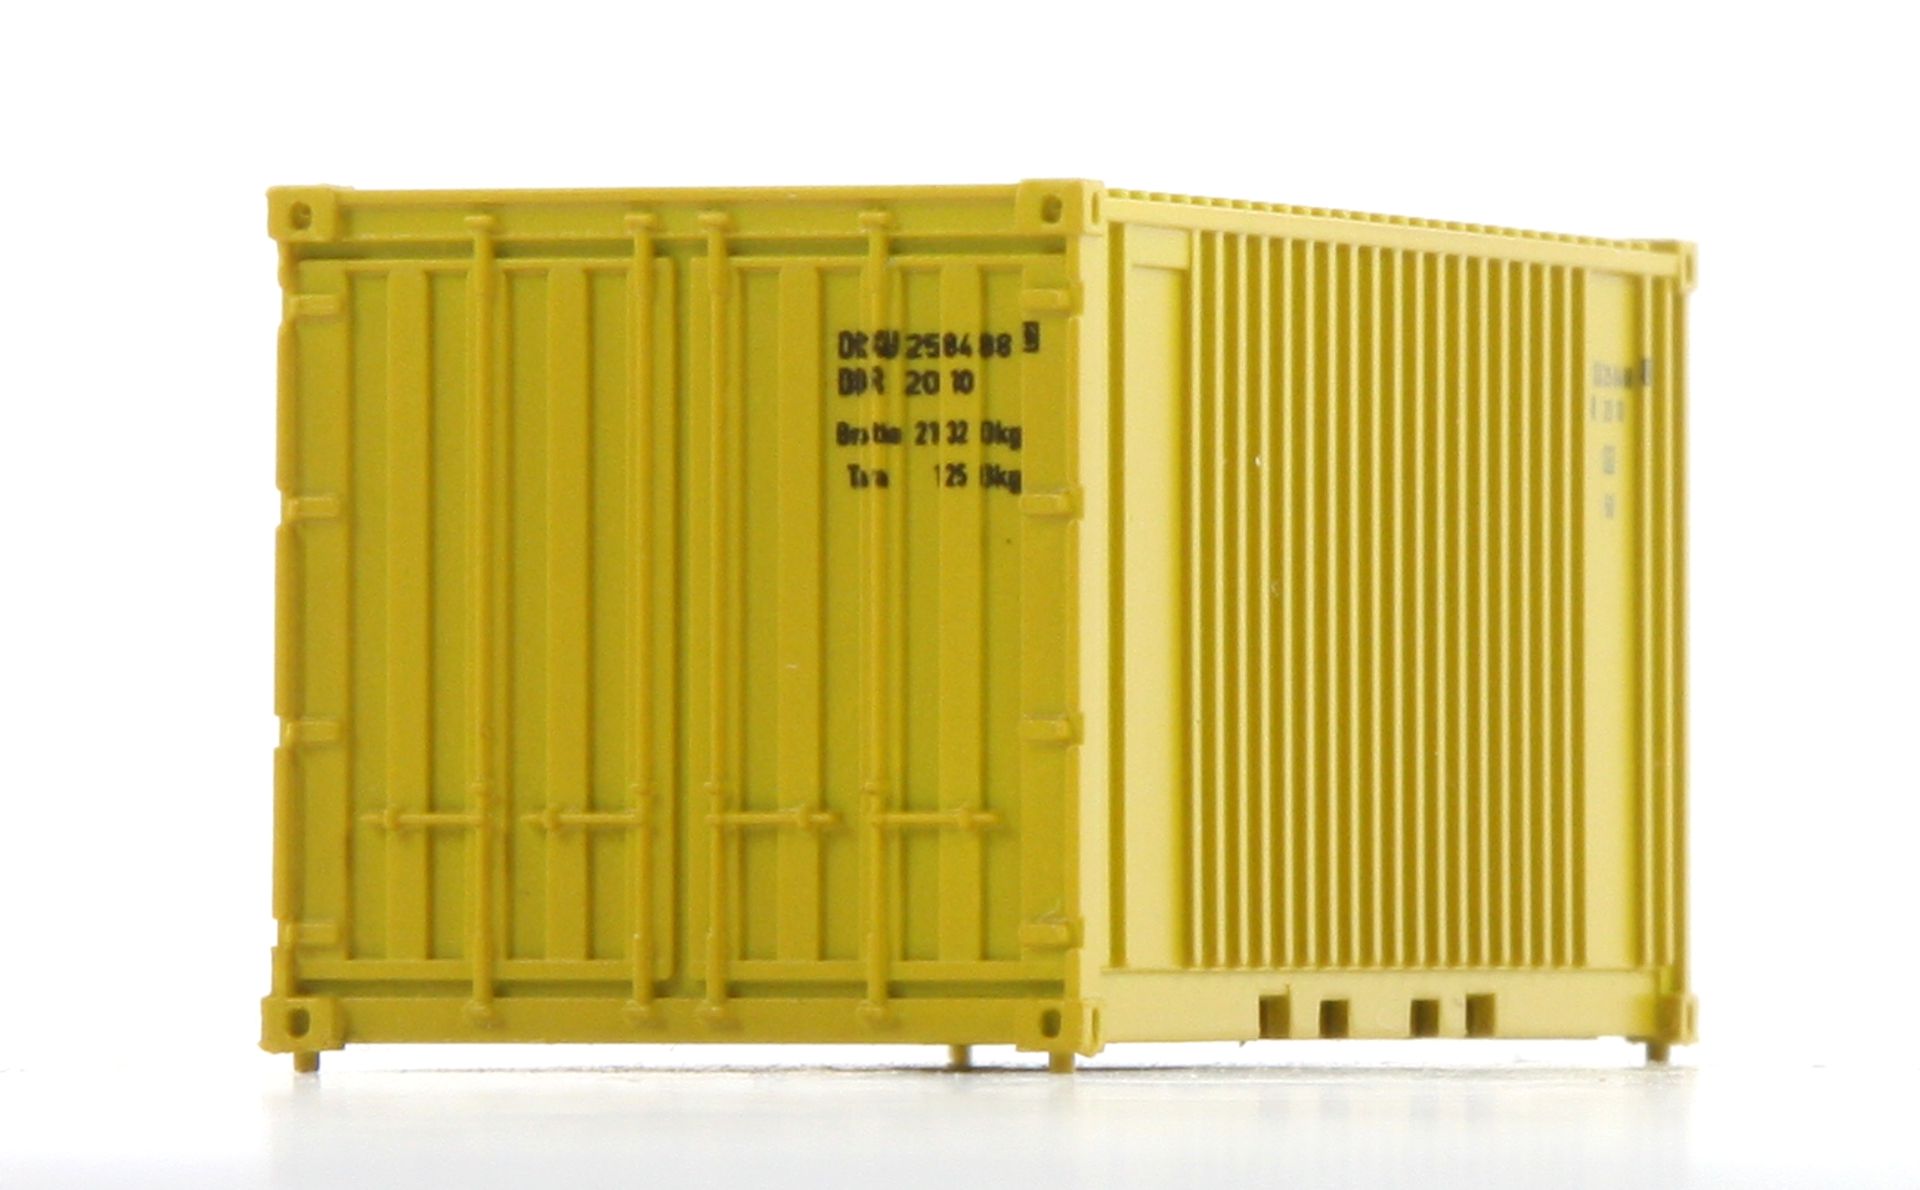 Hädl 711001-05 - Container, 20 Fuß, gelb, DR